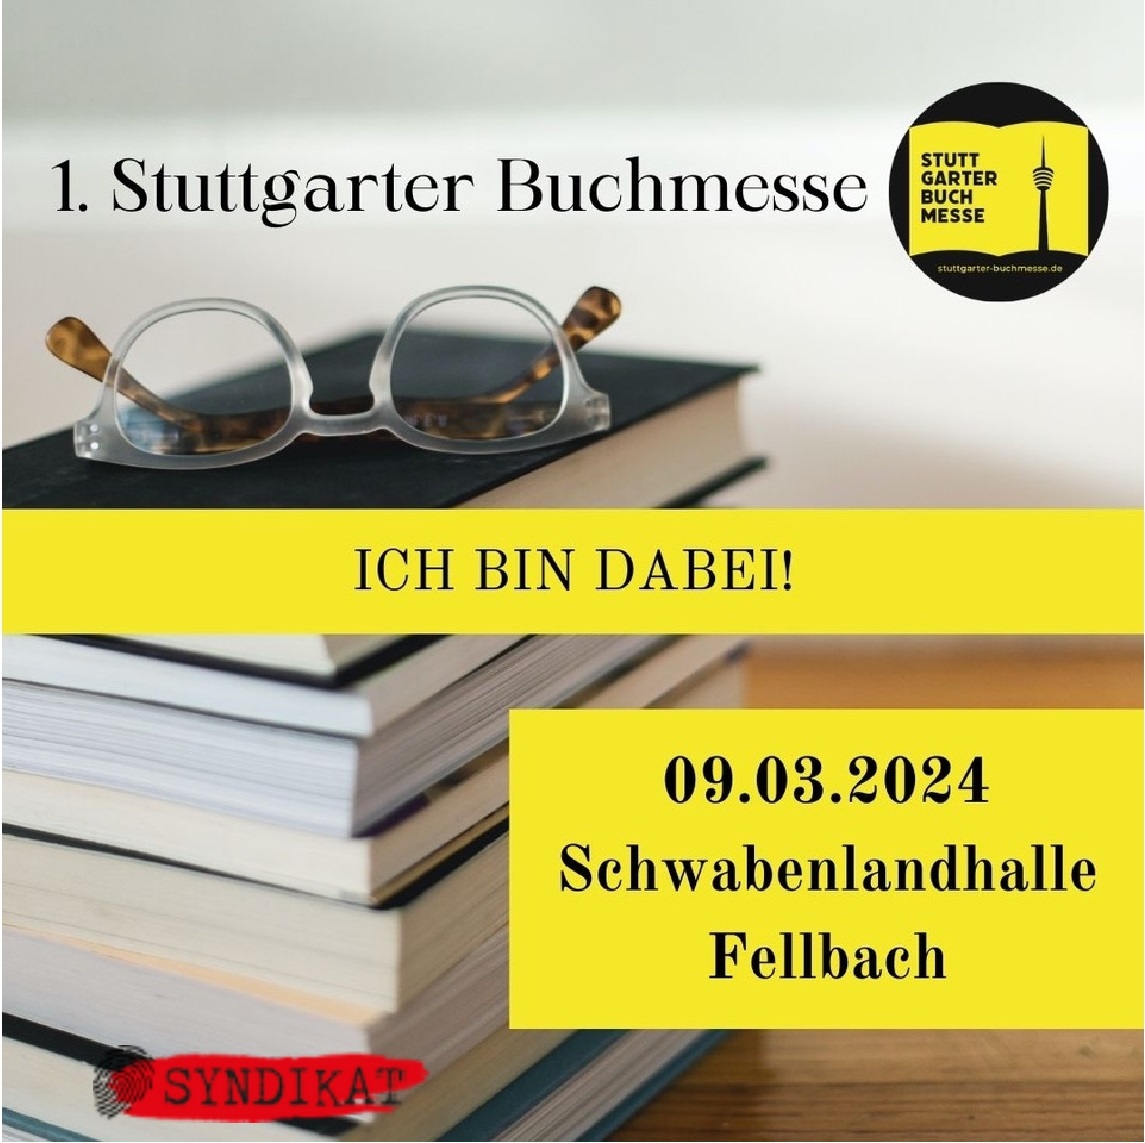 Bild Stuttgarter Buchmesse mit Logo des Syndikats